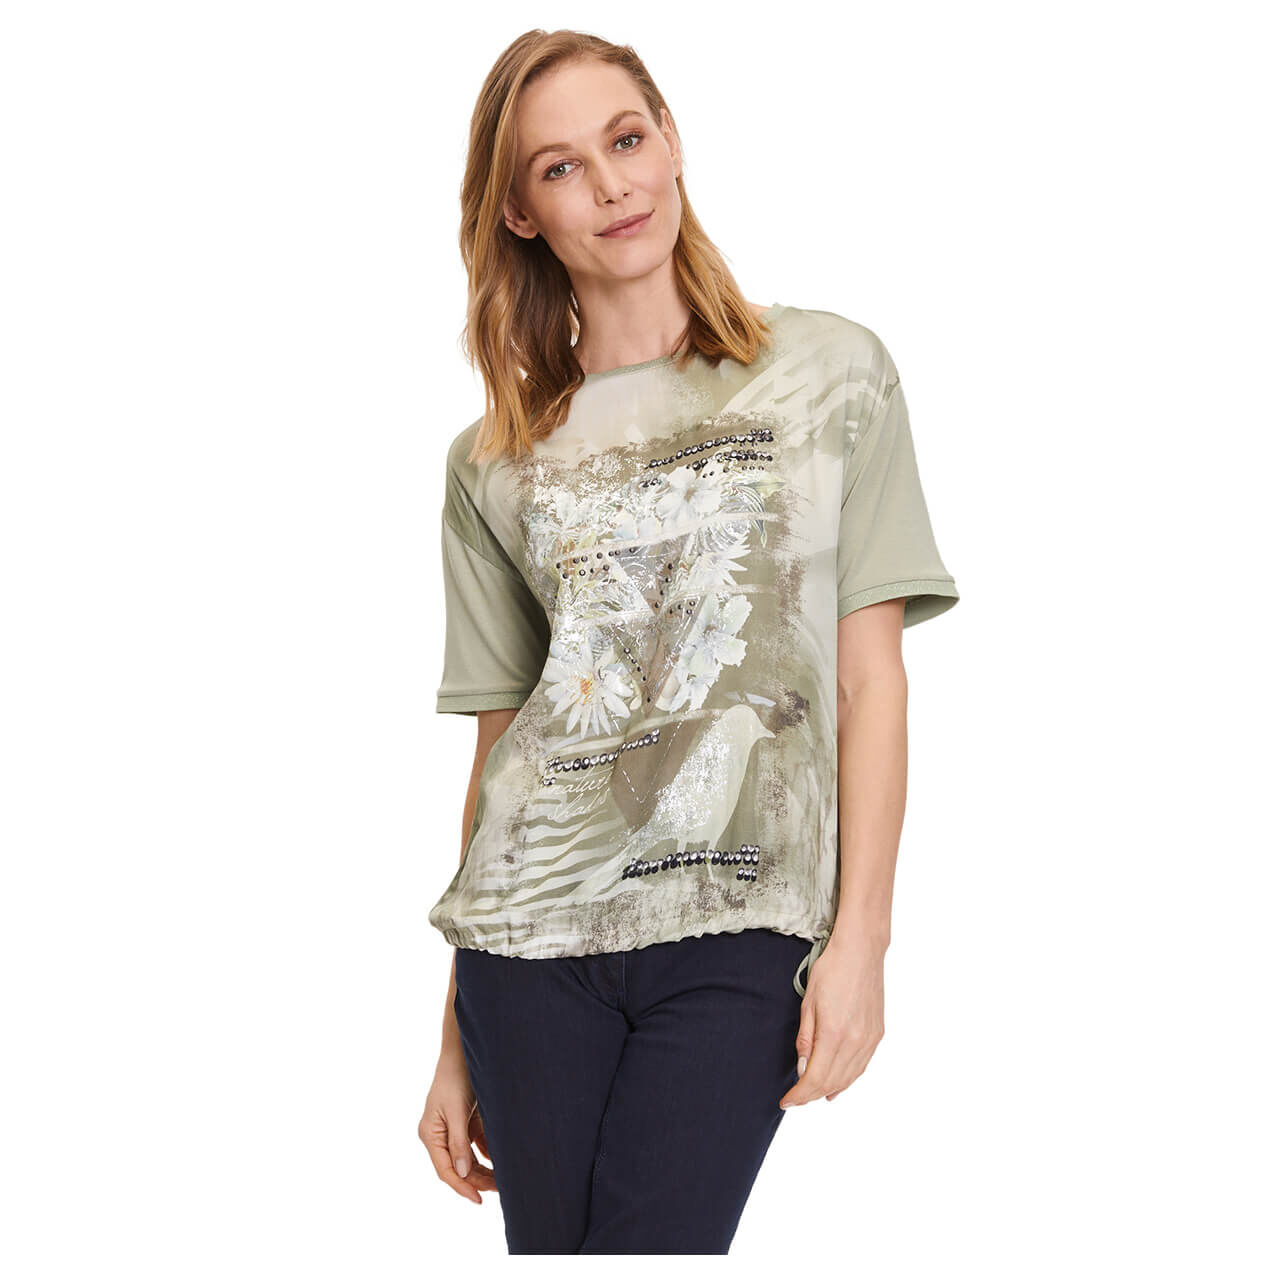 Betty Barclay T-Shirt für Damen in Salbeigrün mit Print, FarbNr.: 7856